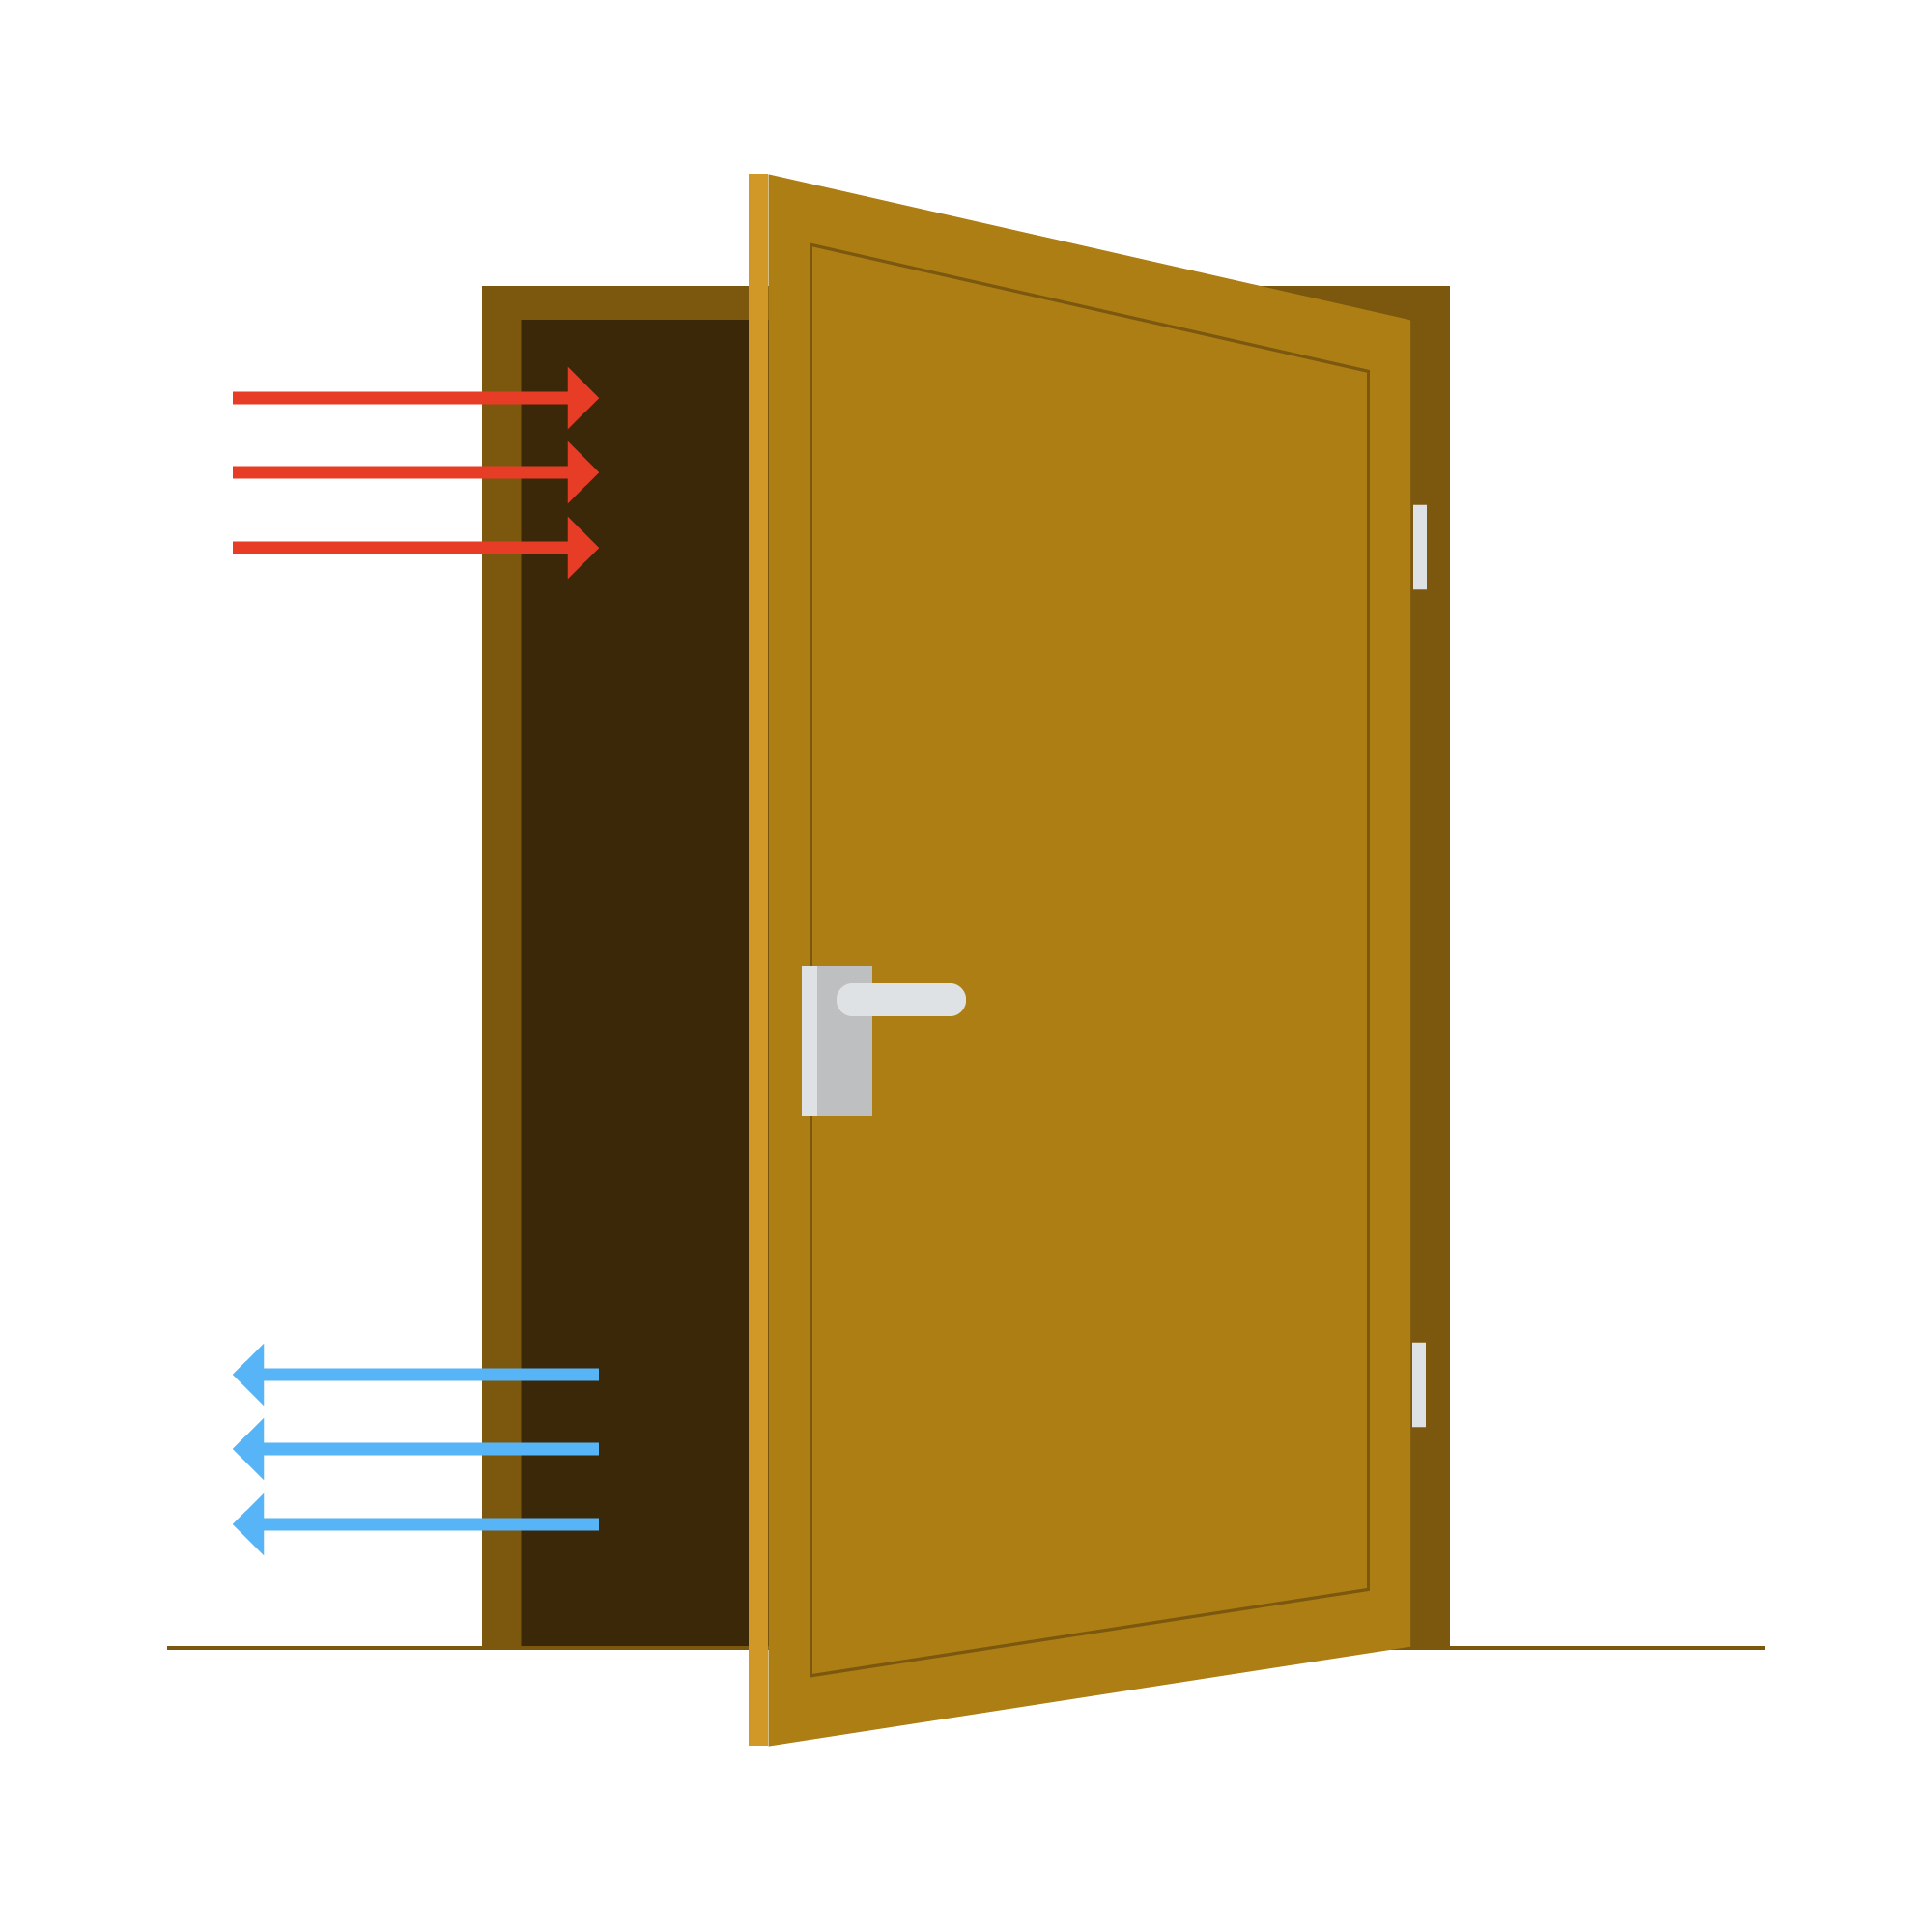 Zeichnung einer offenen Tür bei der kalte Luft unten reinströmt und warme oben austritt